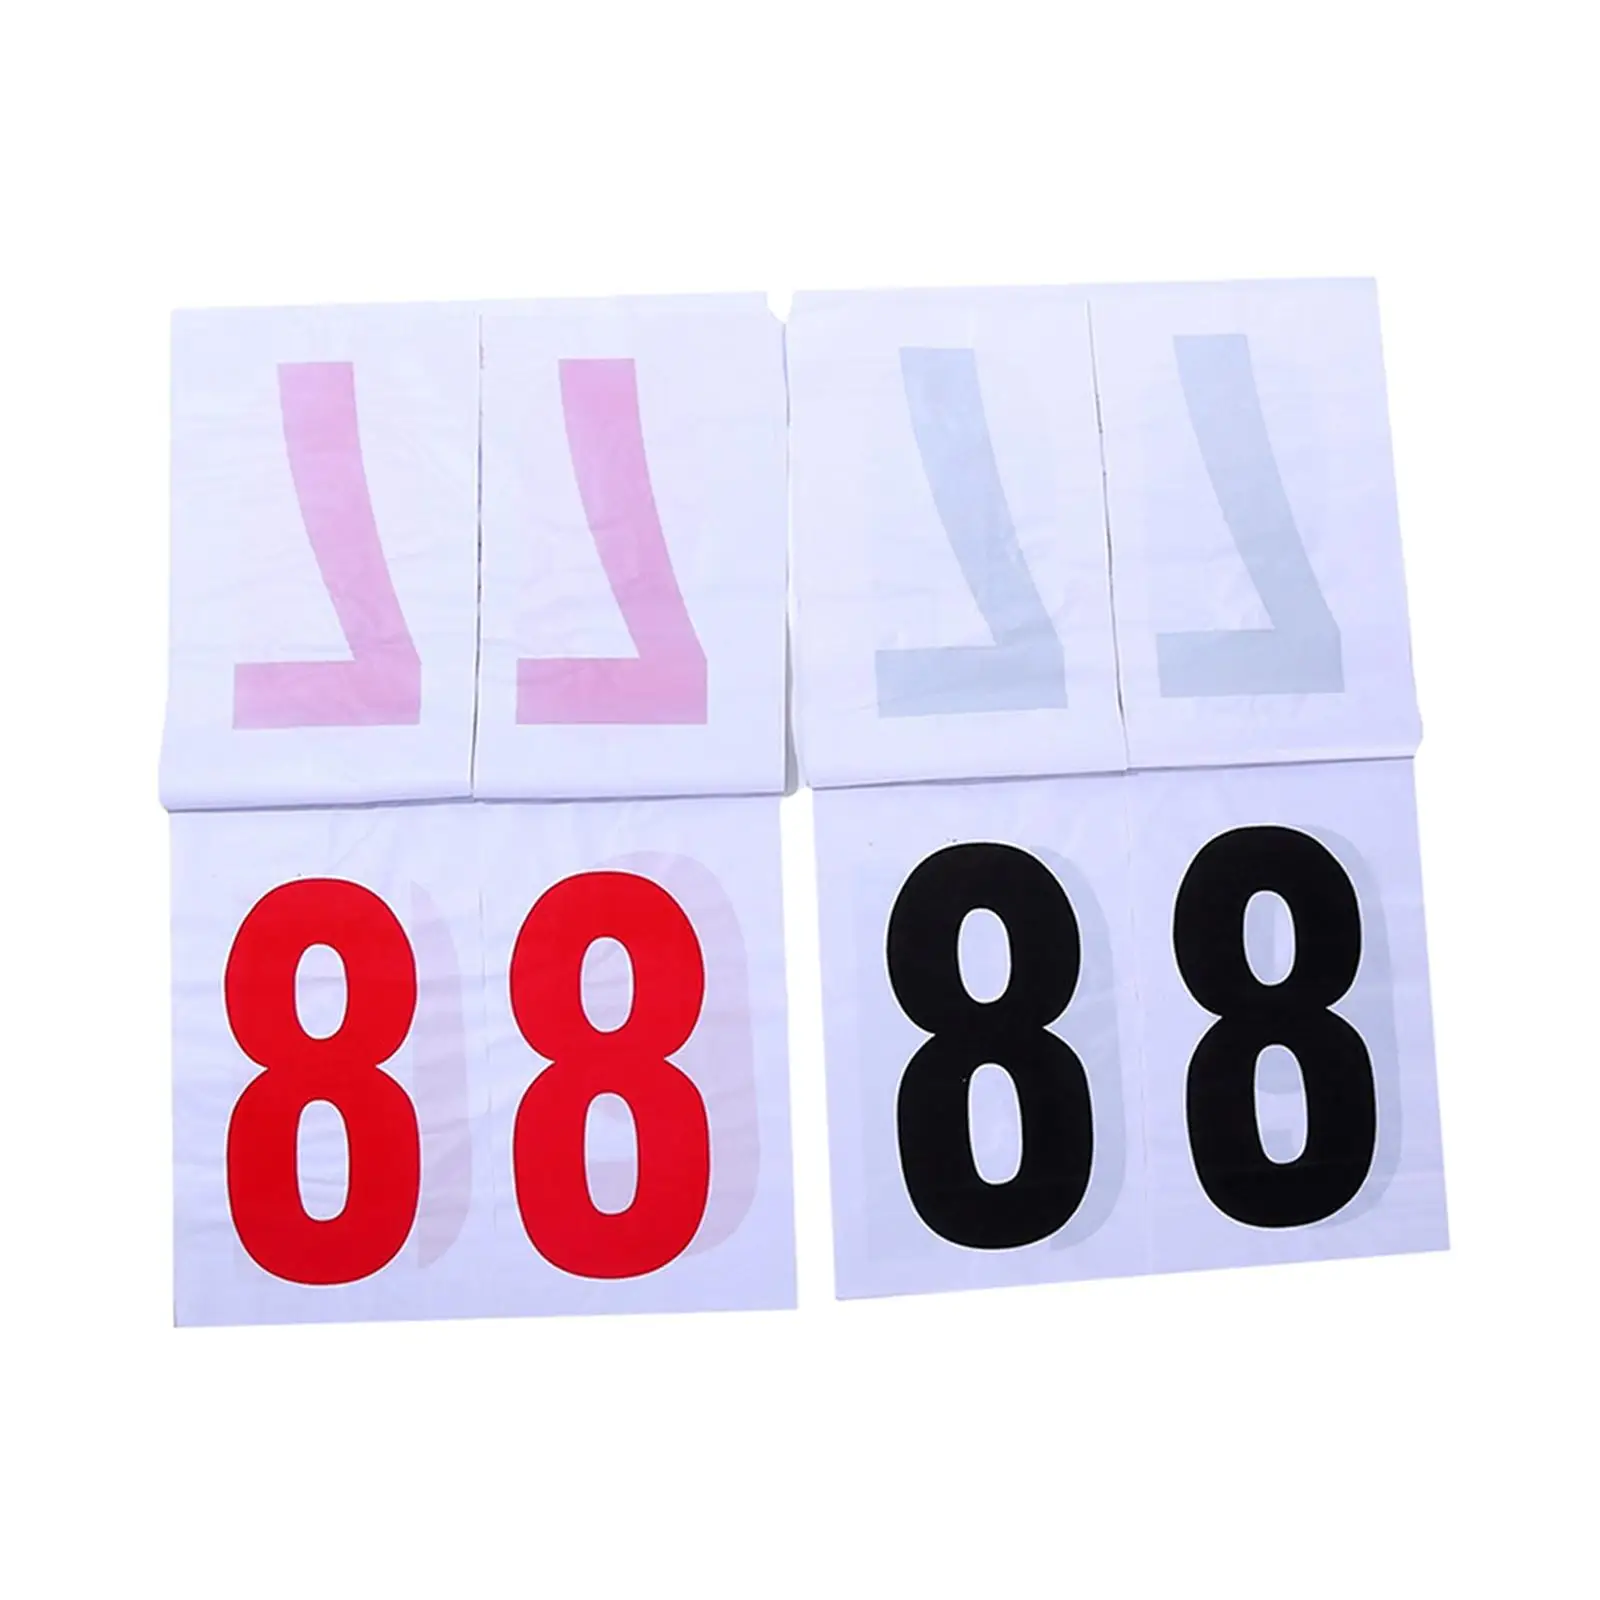 Scoreboard 16.4in*16.4in Hanging 2 digits for Soccer Indoor Outdoor Pingpong